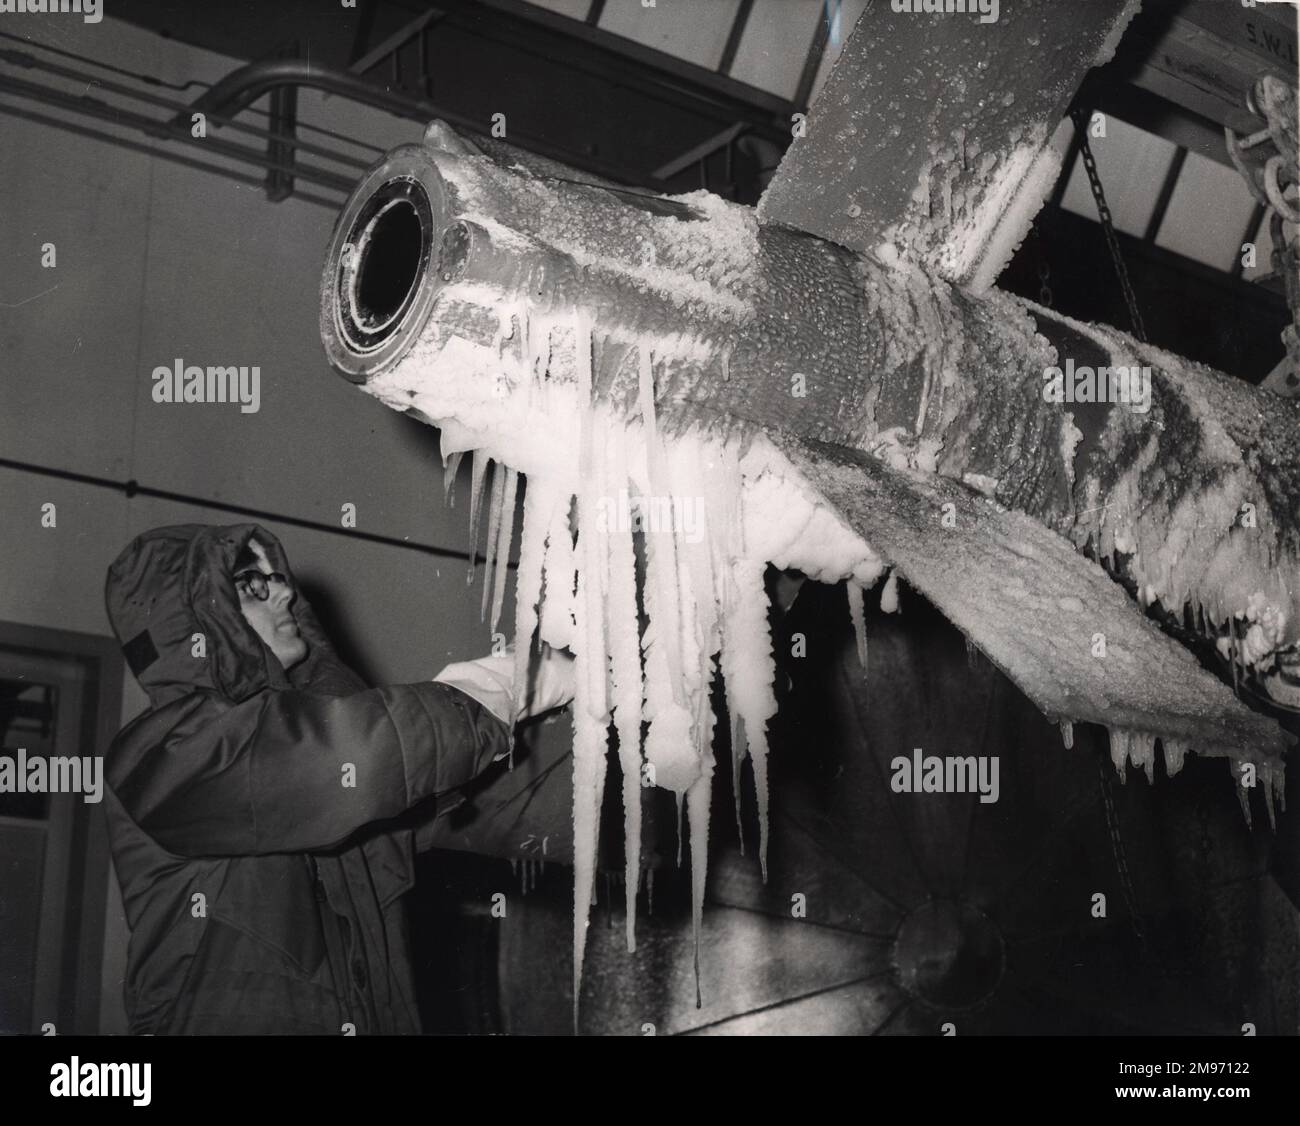 Ein Techniker inspiziert eine Schiff-Luft-Rakete von Armstrong Whitworth Seaslug, nachdem sie in der Klimakammer des Unternehmens bei arktischen Temperaturen getestet wurde. November 1959. Stockfoto